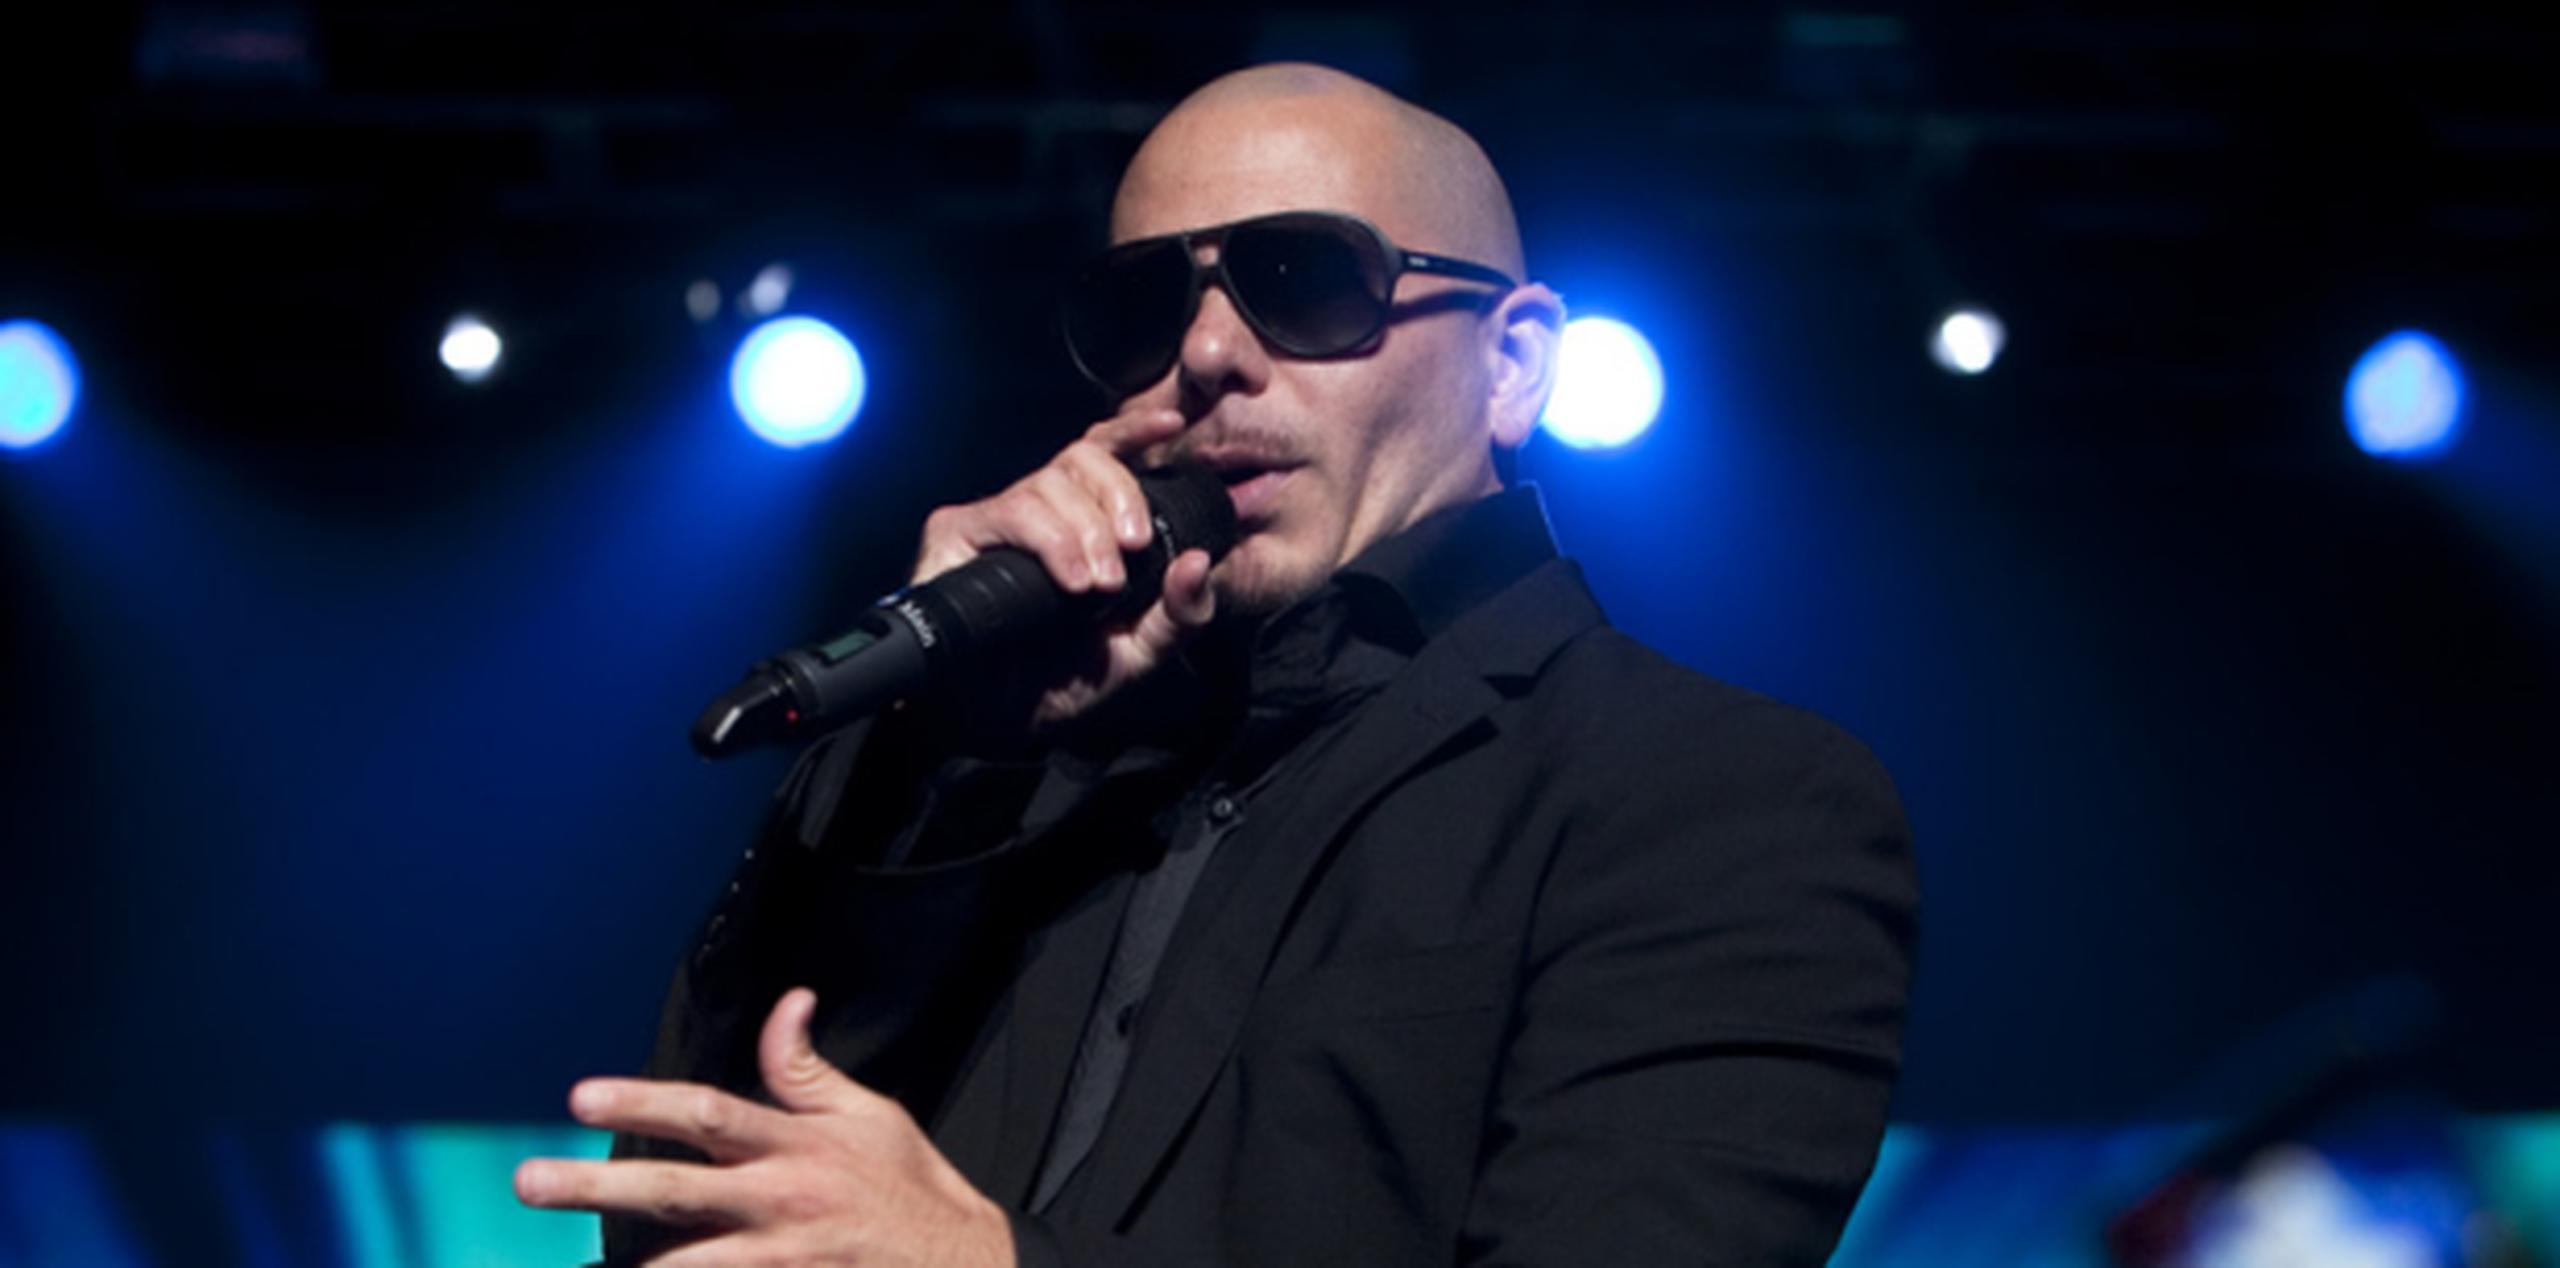 El cantante Pitbull participará en la 58 edición de los premios Grammy. (Archivo)